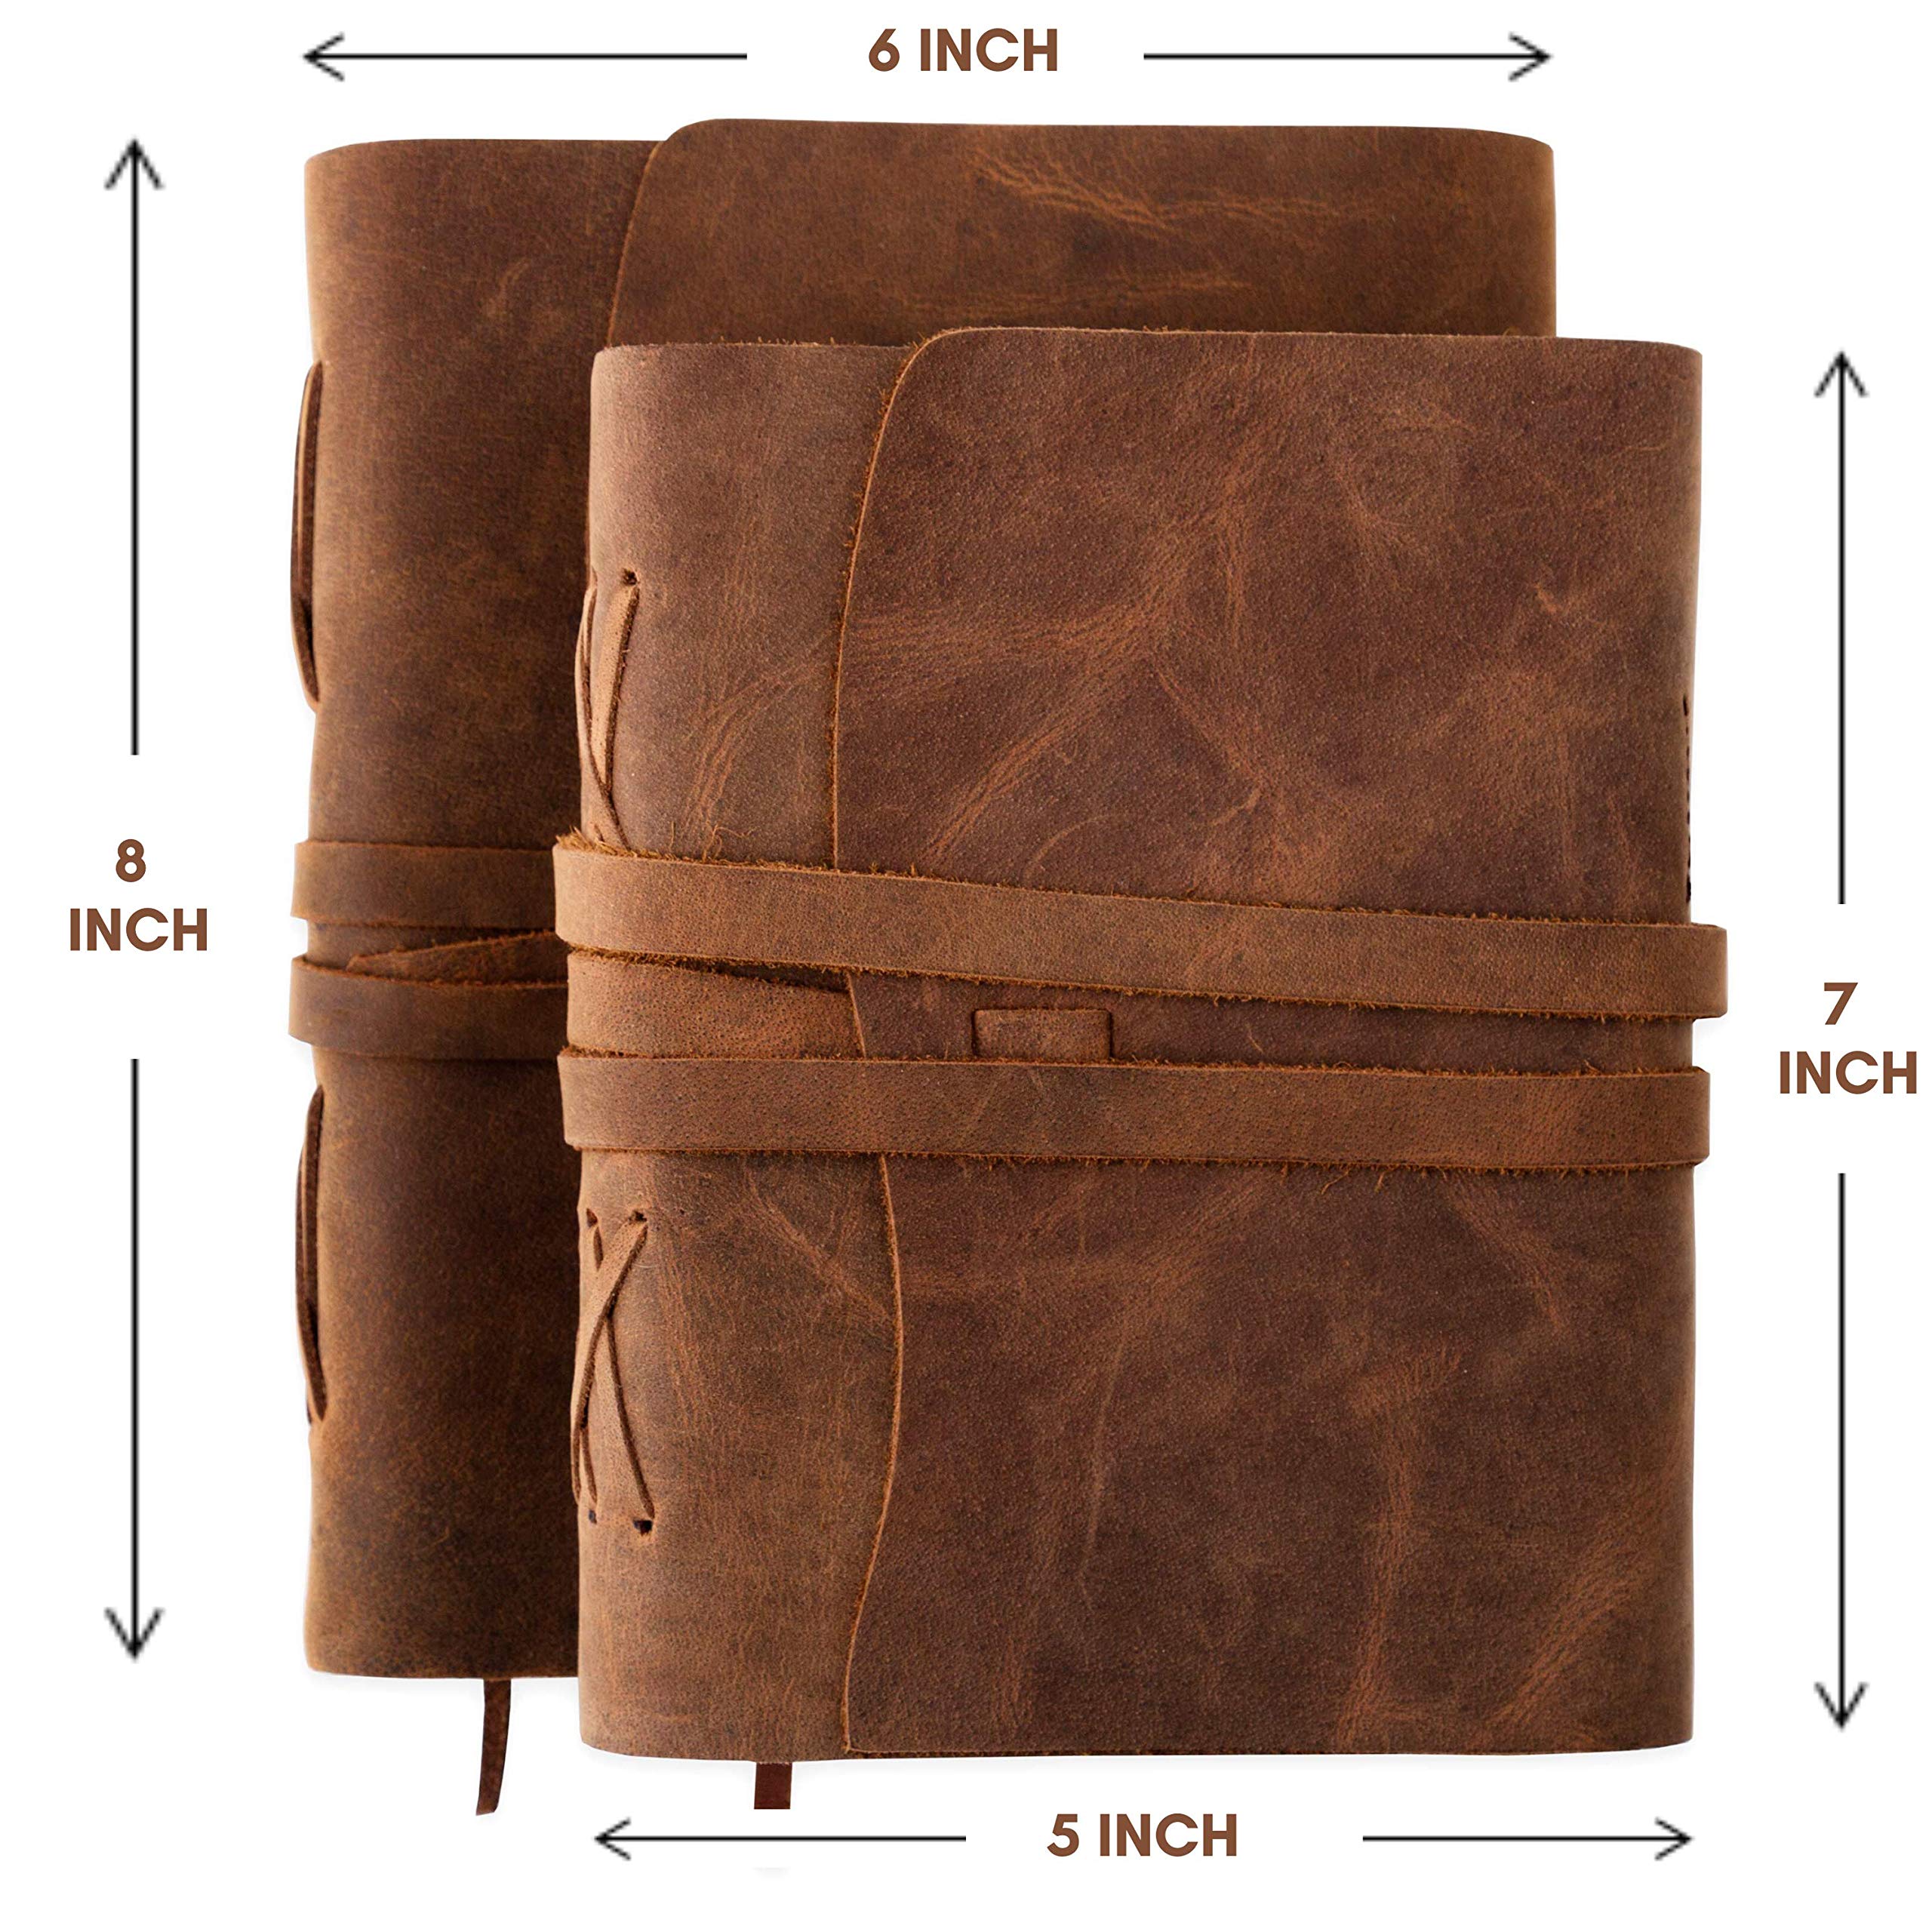 Scriveiner Premium Handmade Leather Journal – 8x6